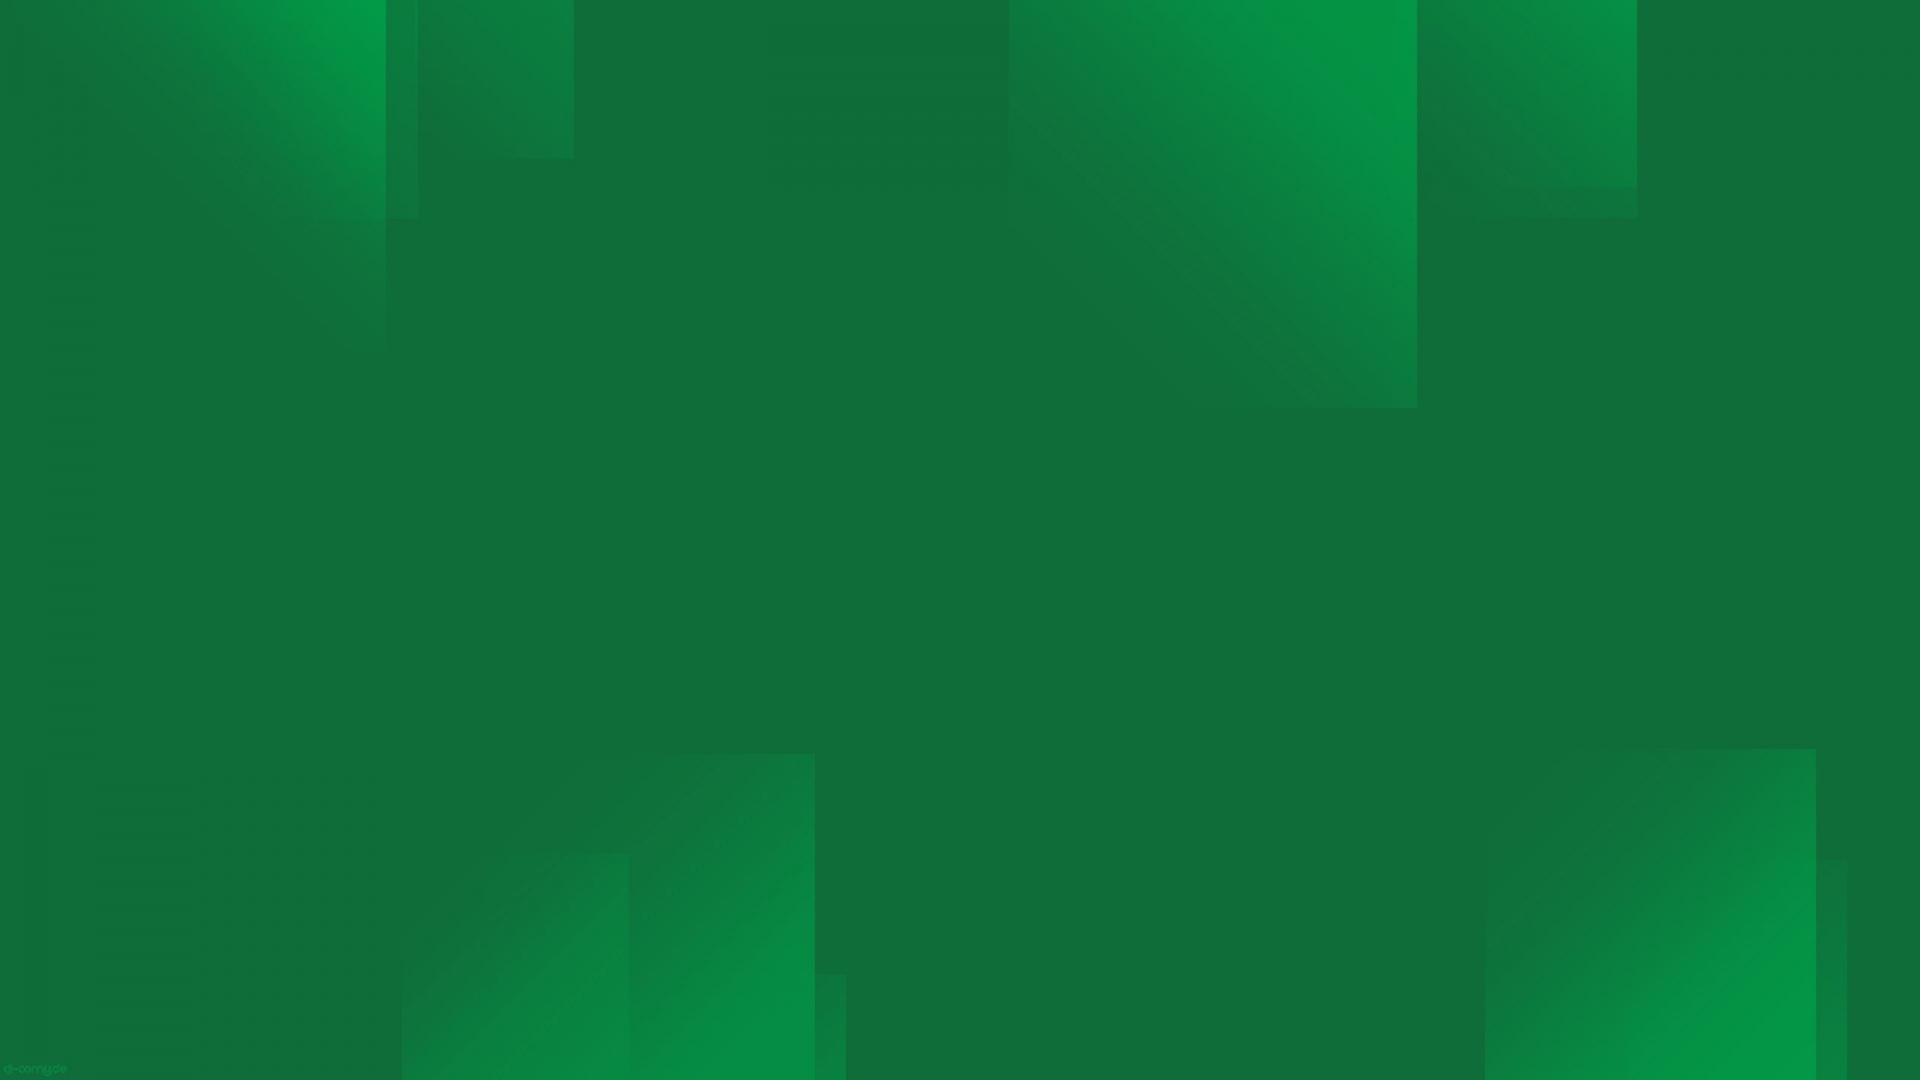 Windows Dark Green Wallpaper For HDtv 1080p Kies